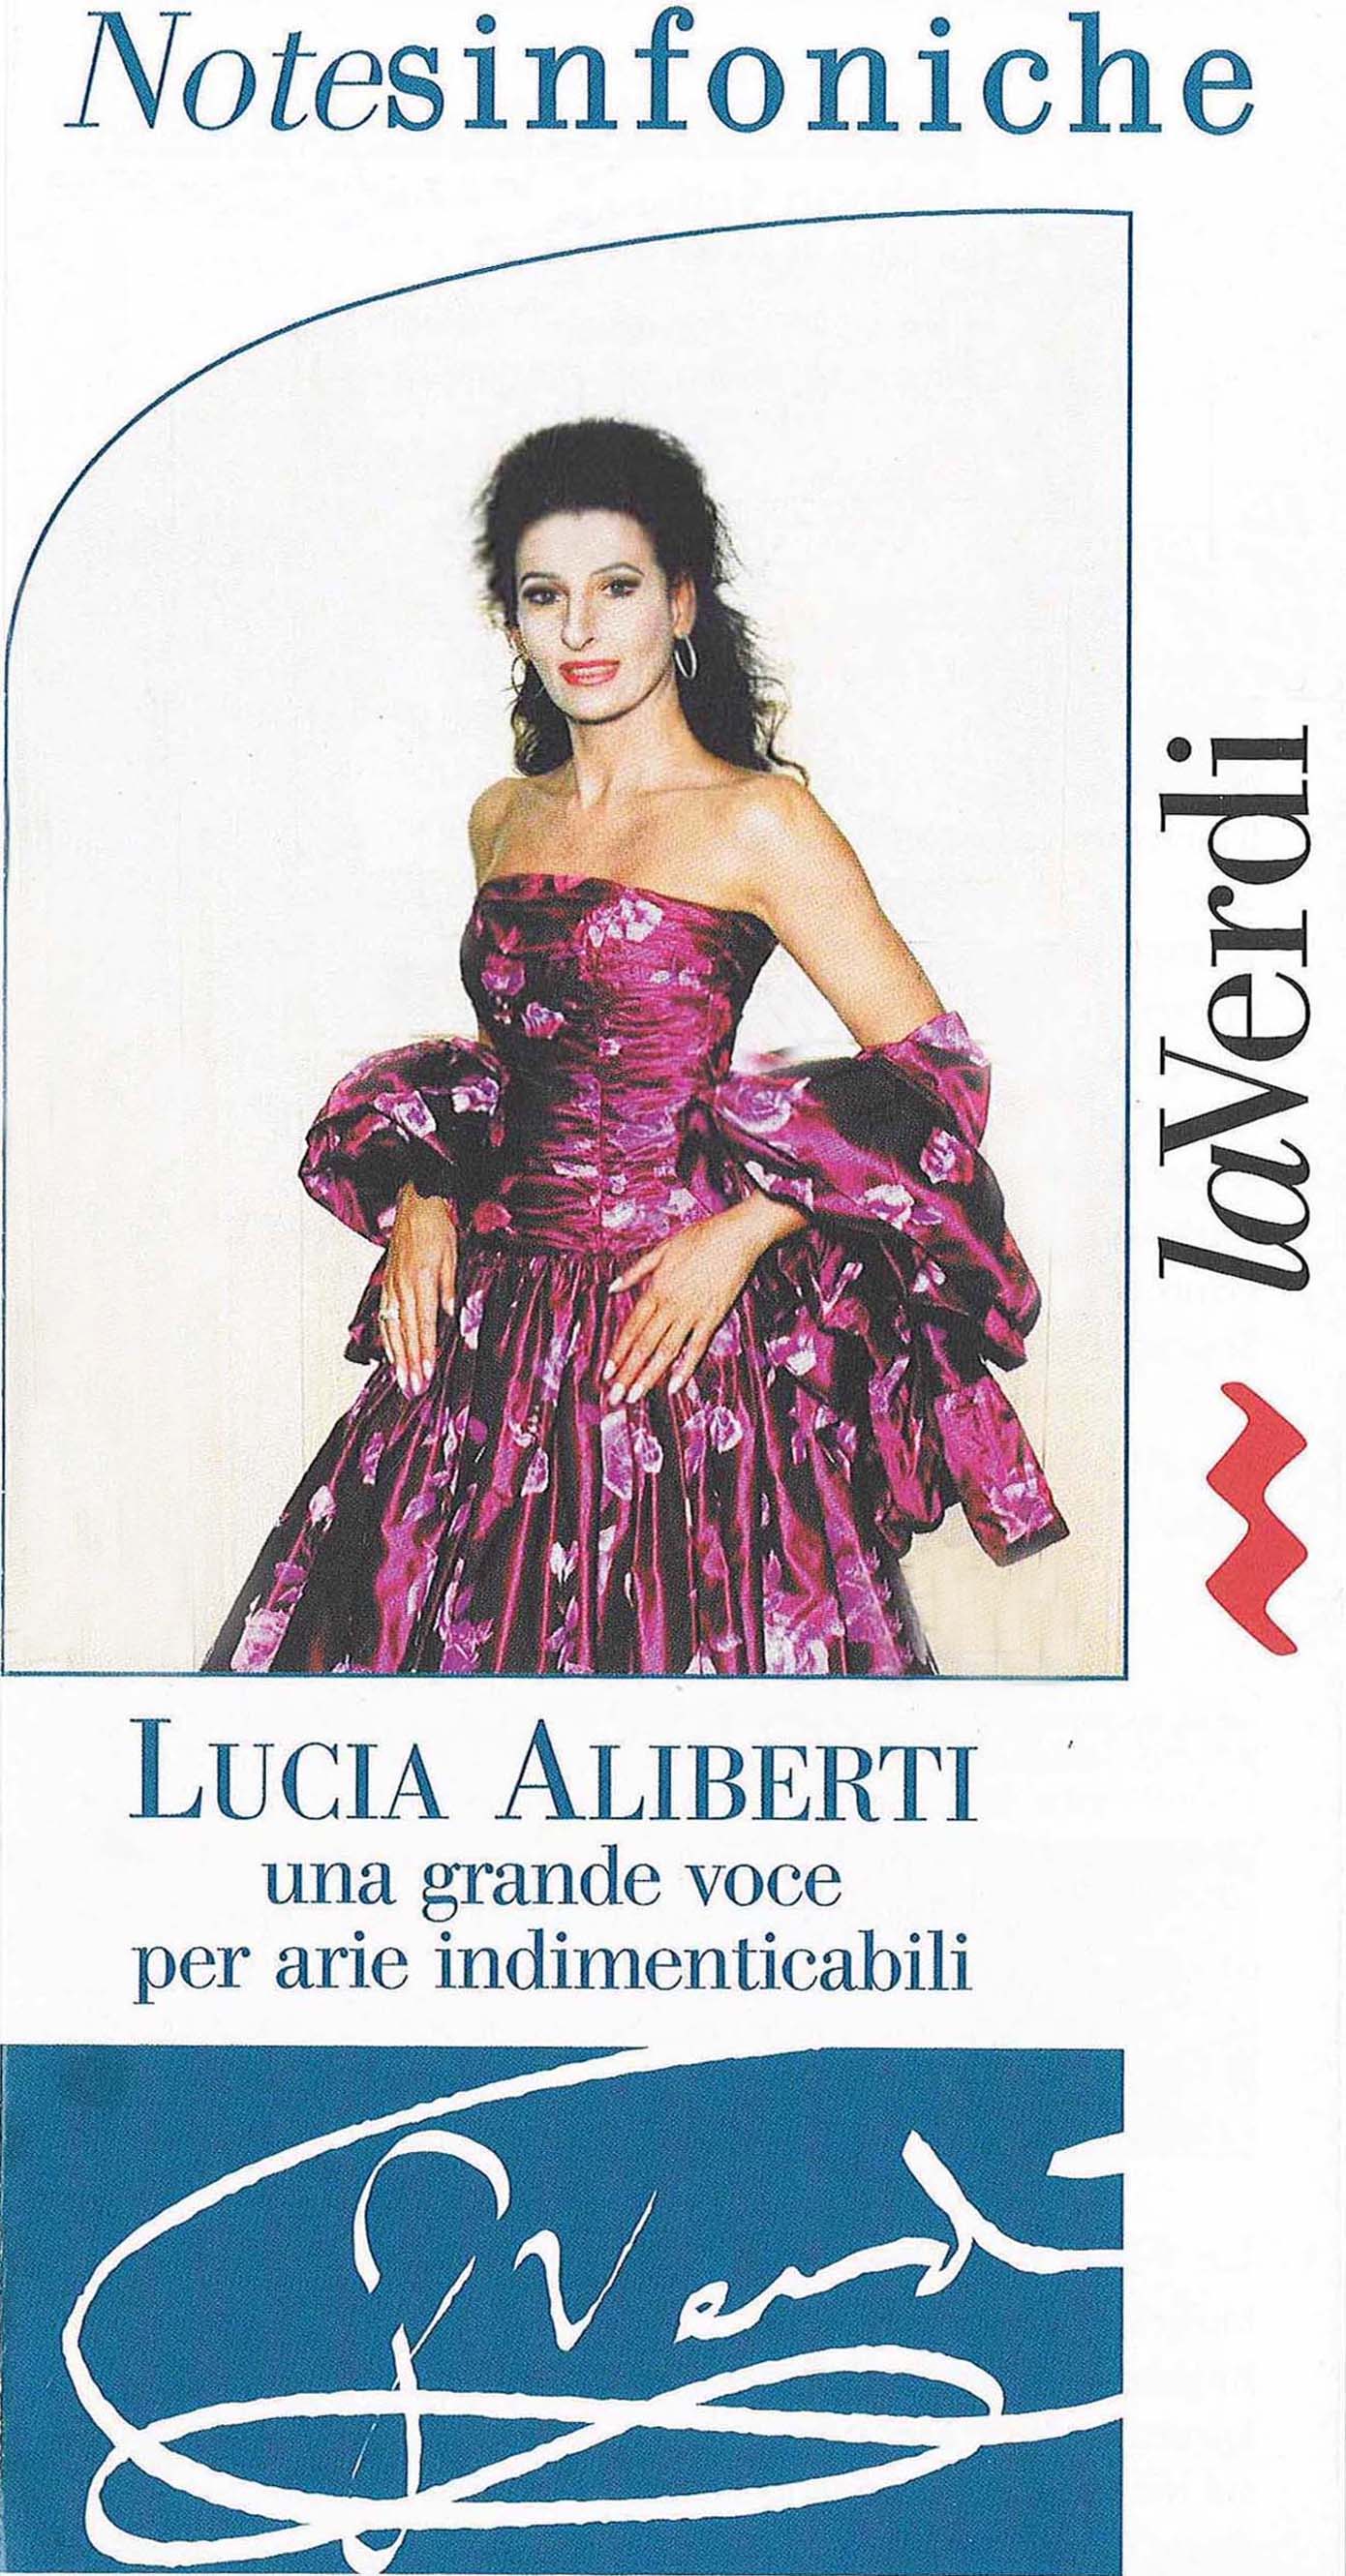 Lucia Aliberti⚘"La Verdi"⚘Note Sinfoniche⚘Una Grande Voce⚘Concert⚘Auditorium⚘Milan⚘:http://www.luciaaliberti.it #luciaaliberti #laverdi #auditorium #milan #notesinfoniche